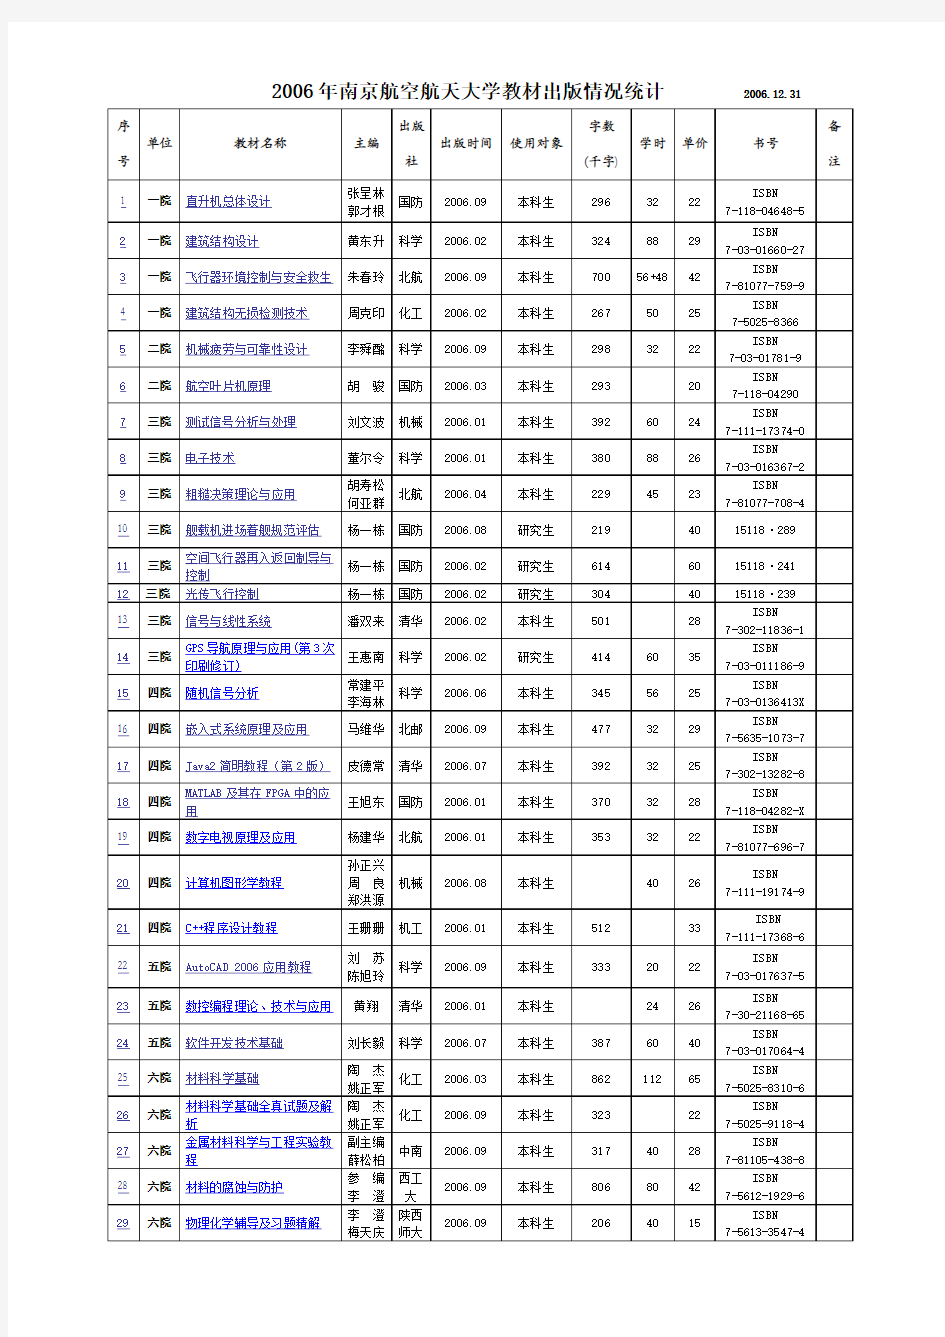 2006年南京航空航天大学教材出版情况统计200131